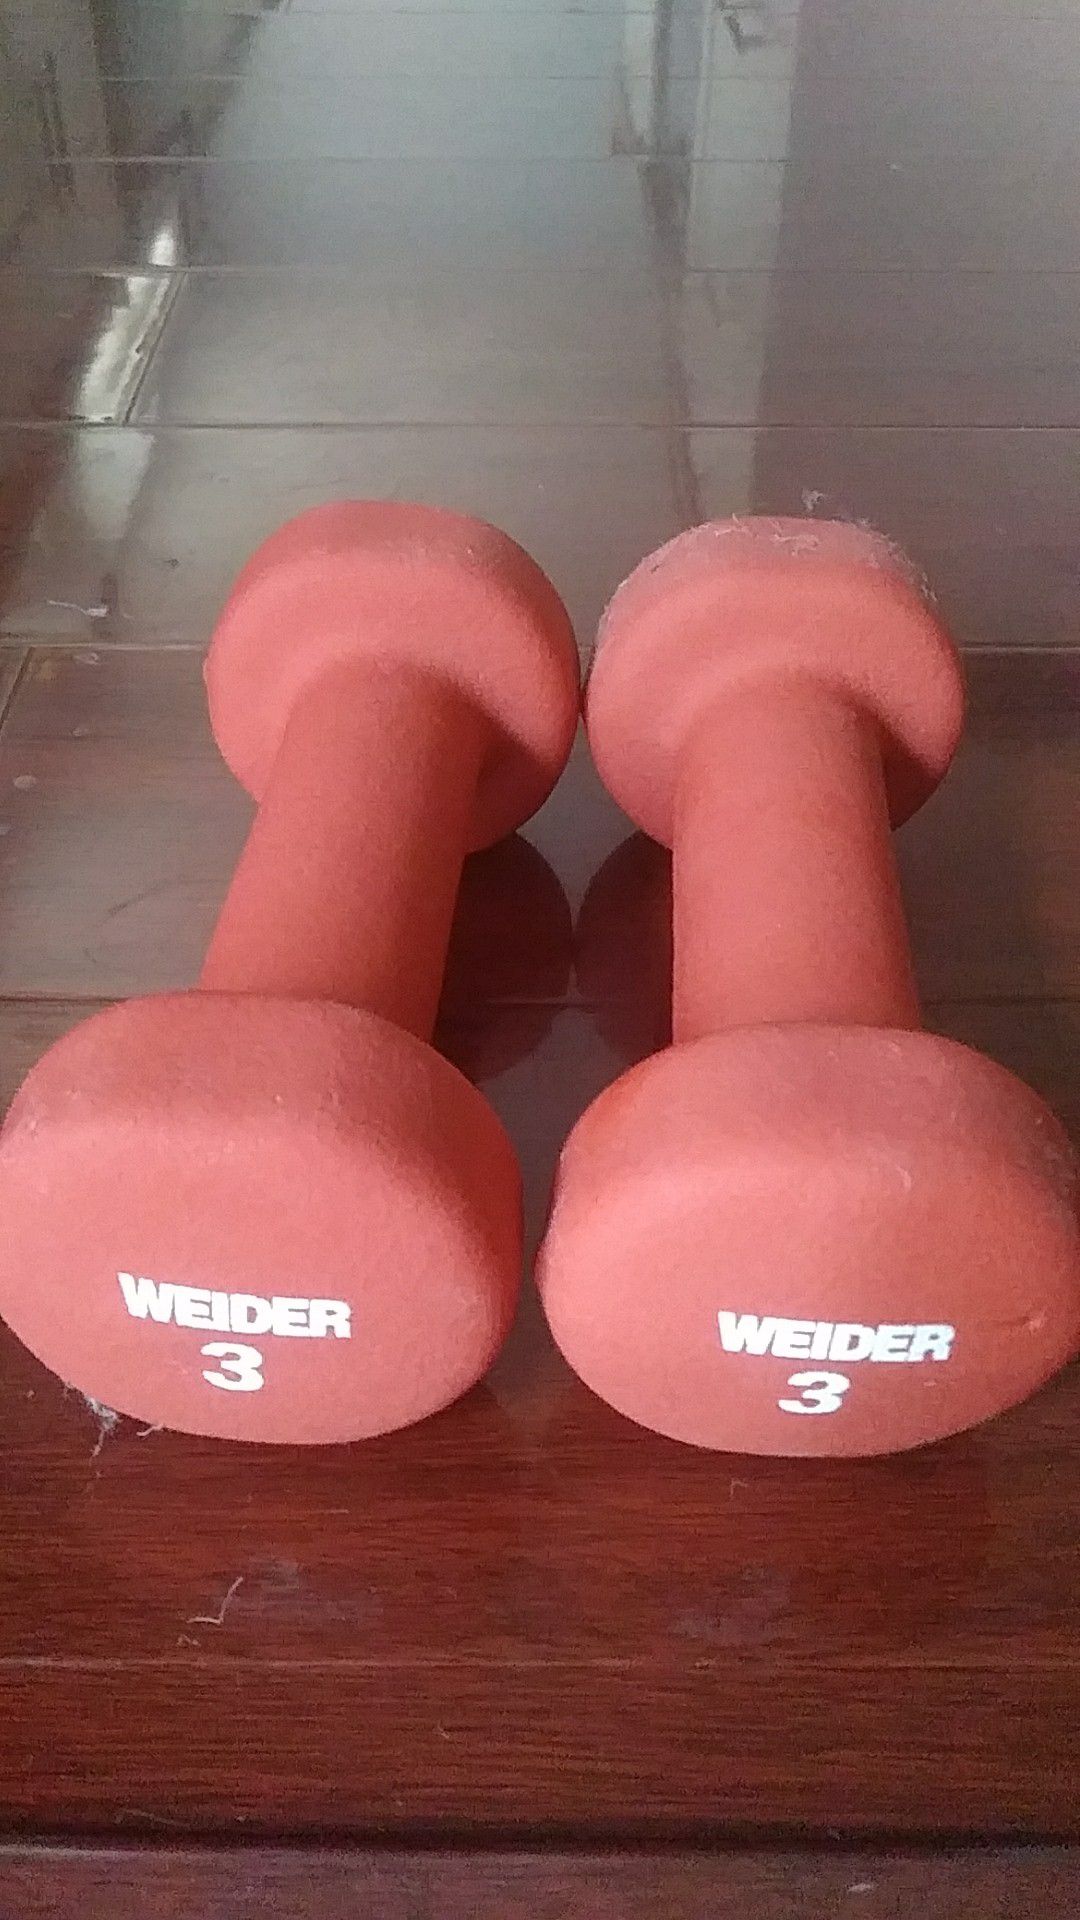 Weider - 3lb weight